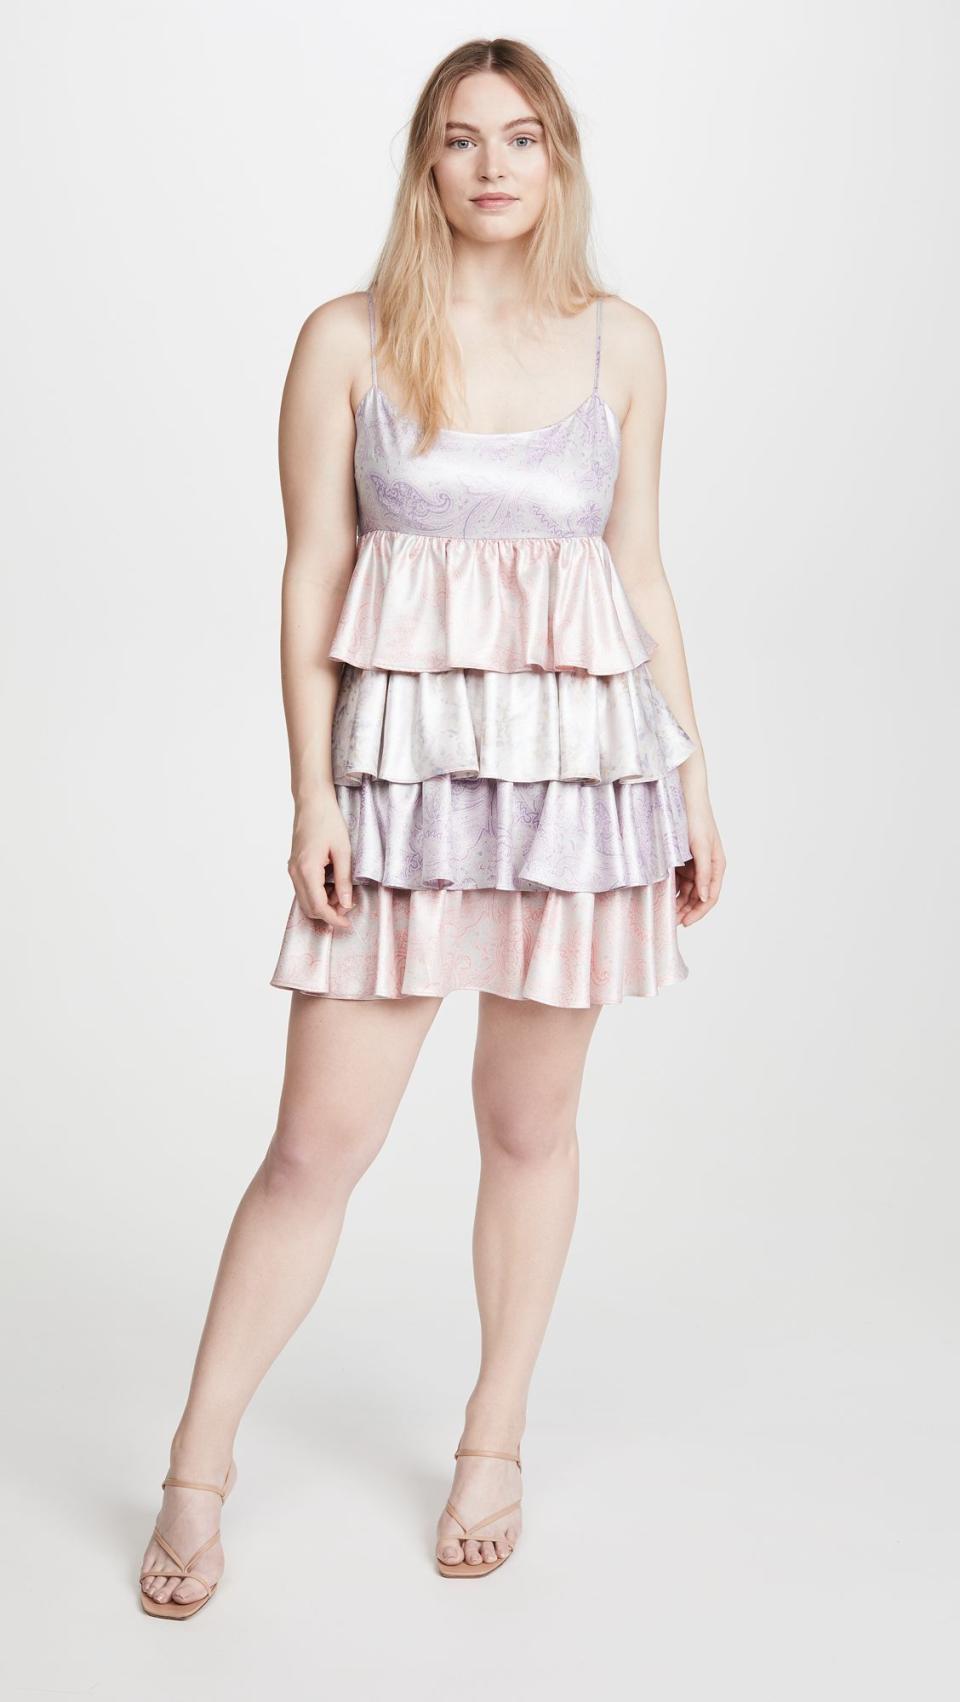 11) Waverly Dress